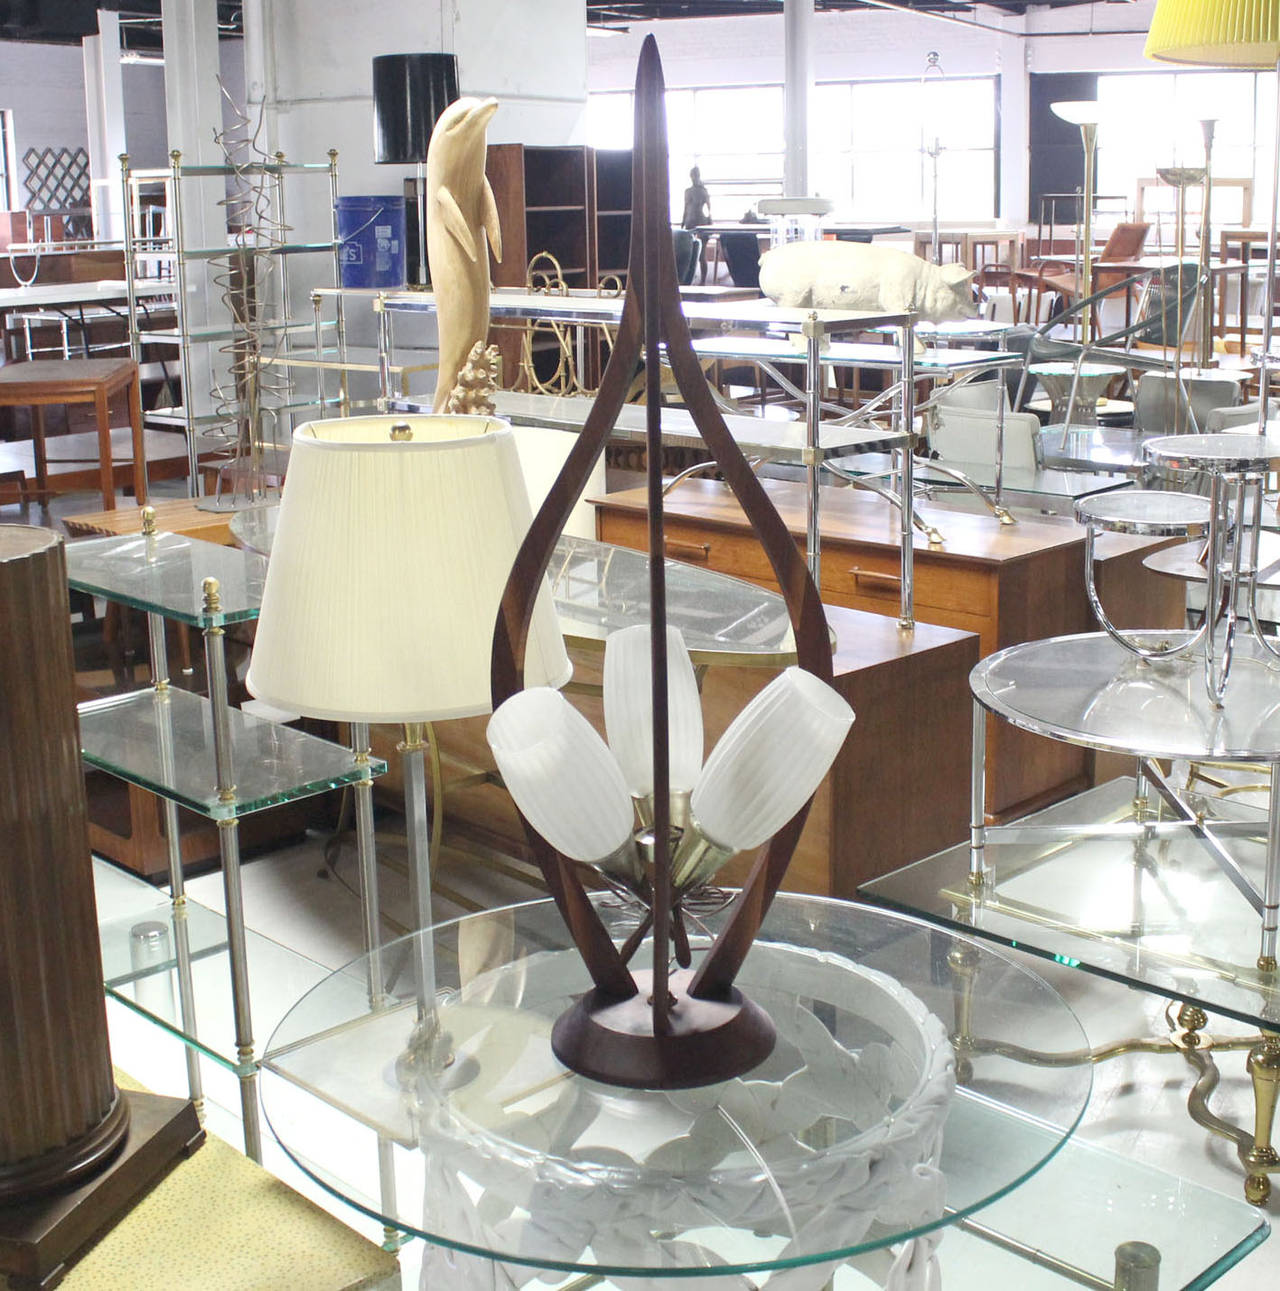 Très belle lampe de table sculpturale danoise moderne du milieu du siècle dernier. Excellent état vintage. Le luminaire semble suspendu au cadre sculptural. Abat-jour en verre dépoli. Cadre en noyer huilé.
